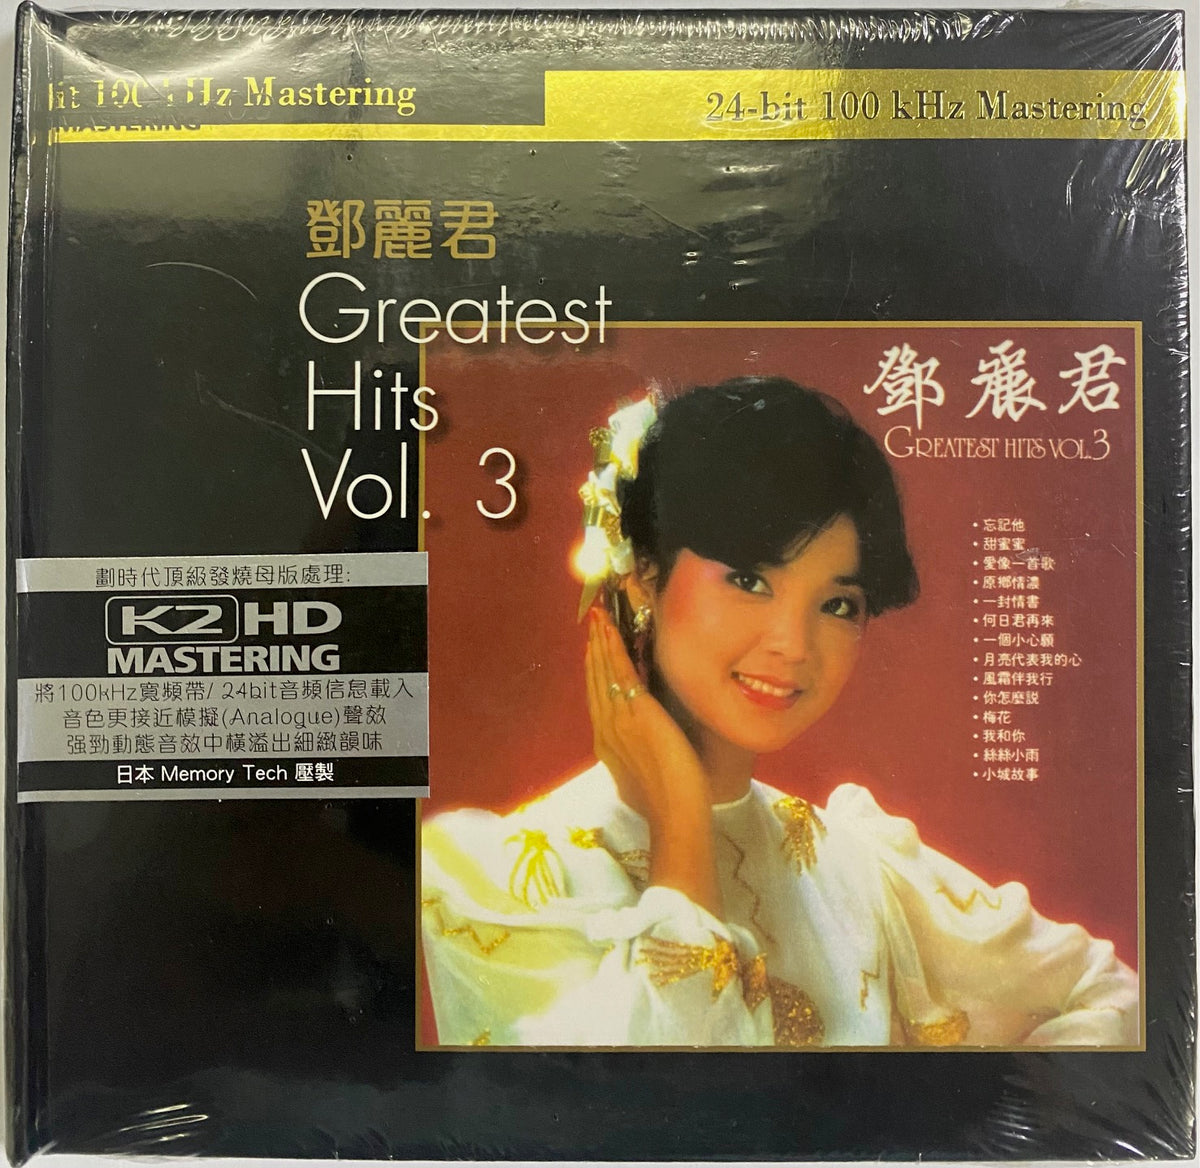 入手困難!鄧麗君 greatest hits vol.3 インサート付き! - その他